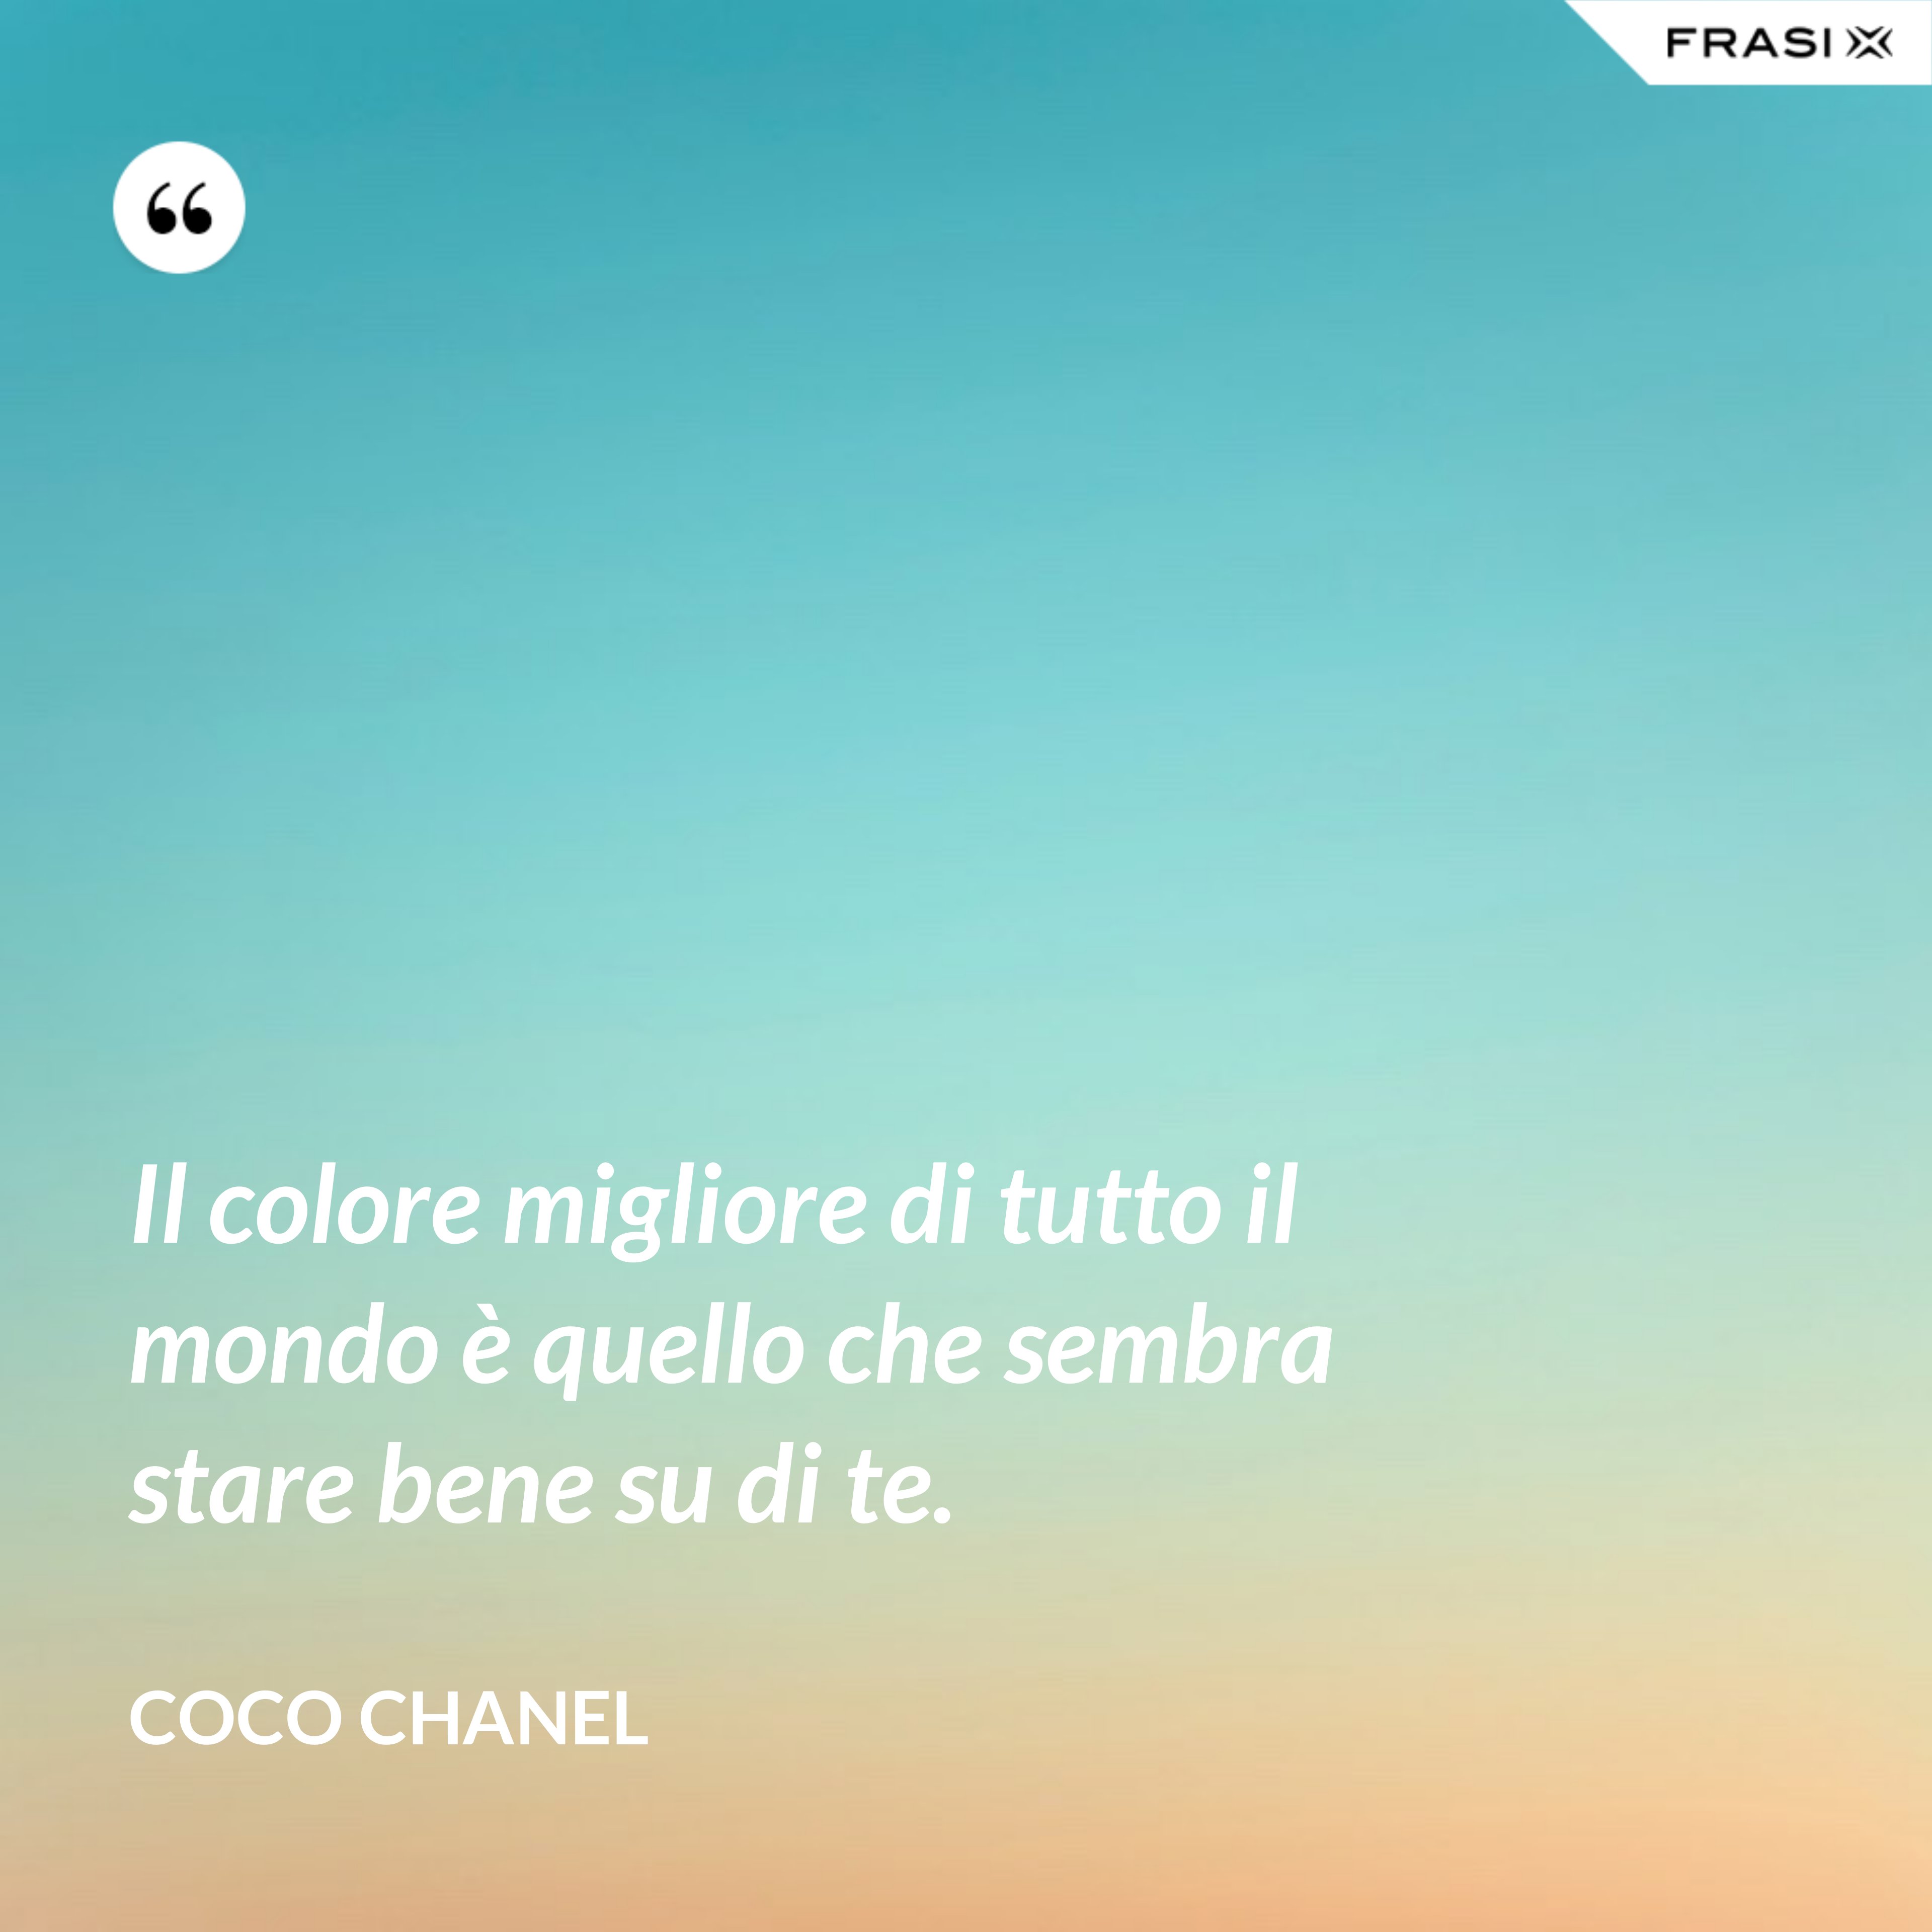 Il colore migliore di tutto il mondo è quello che sembra stare bene su di te. - Coco Chanel